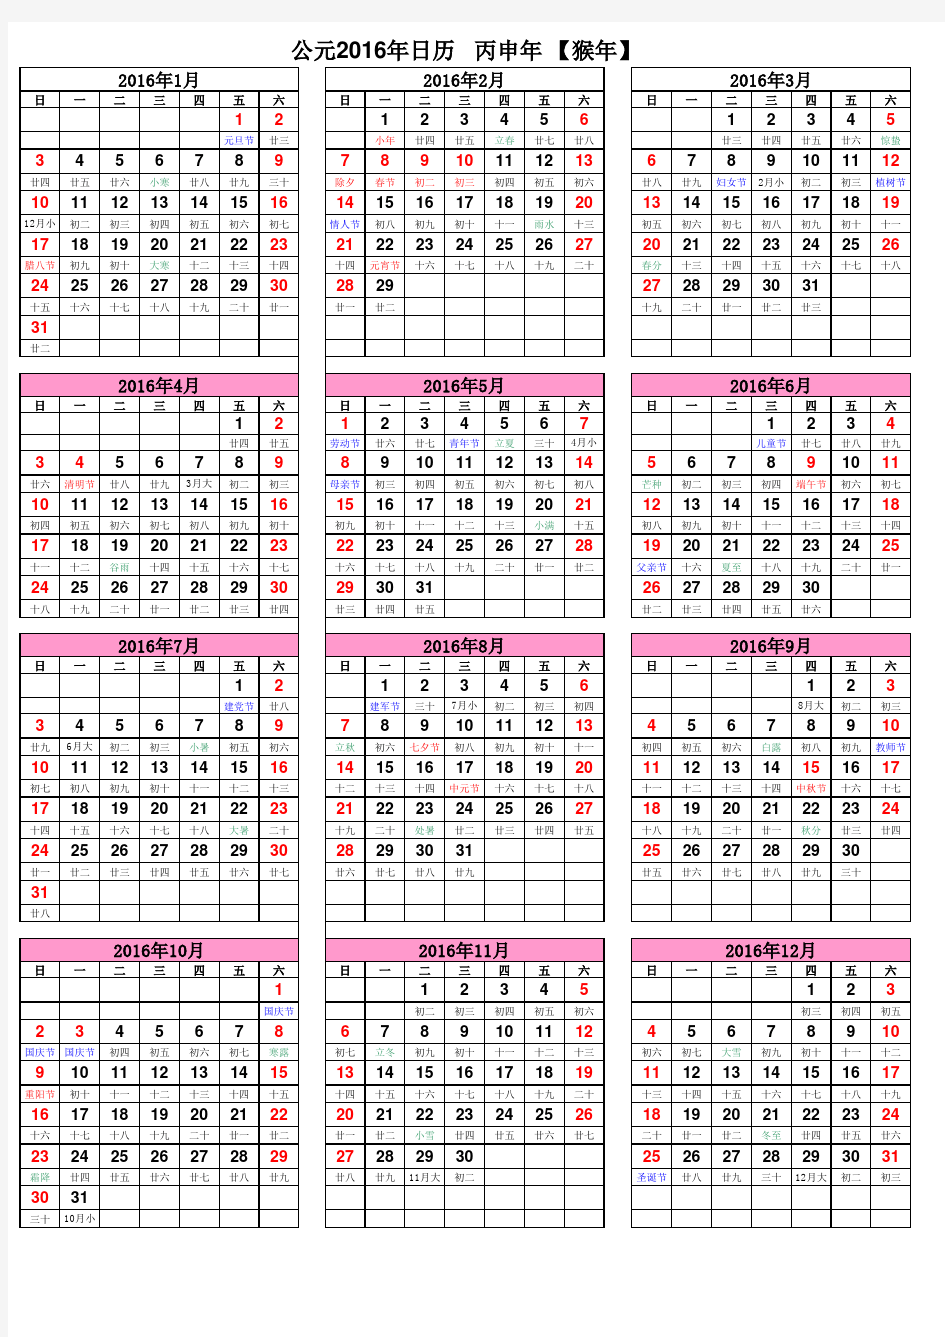 2016年日历表(A4纸打印版)